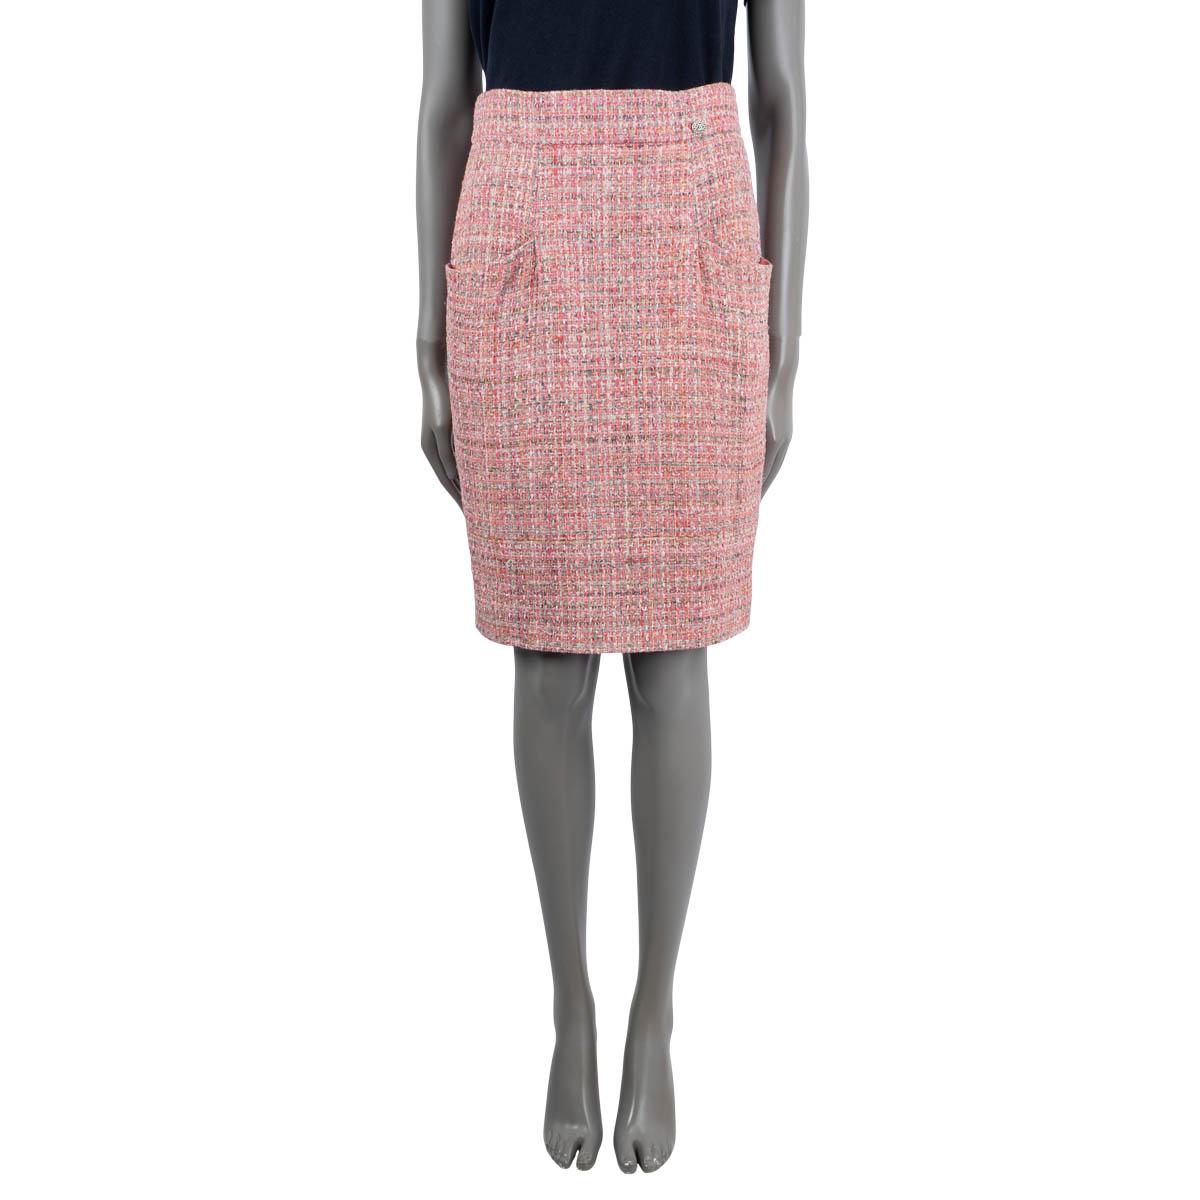 100% authentischer Chanel Tweed-Rock aus rosa und mehrfarbigem Nylon (81%), Polyurethan (6%), Acryl (5%), Viskose (3%), Baumwolle (3%), Mohair (1%) und Wolle (1%). Mit geflochtenem Metall und CC-Knopf an der Taille. Lässt sich mit einem verdeckten